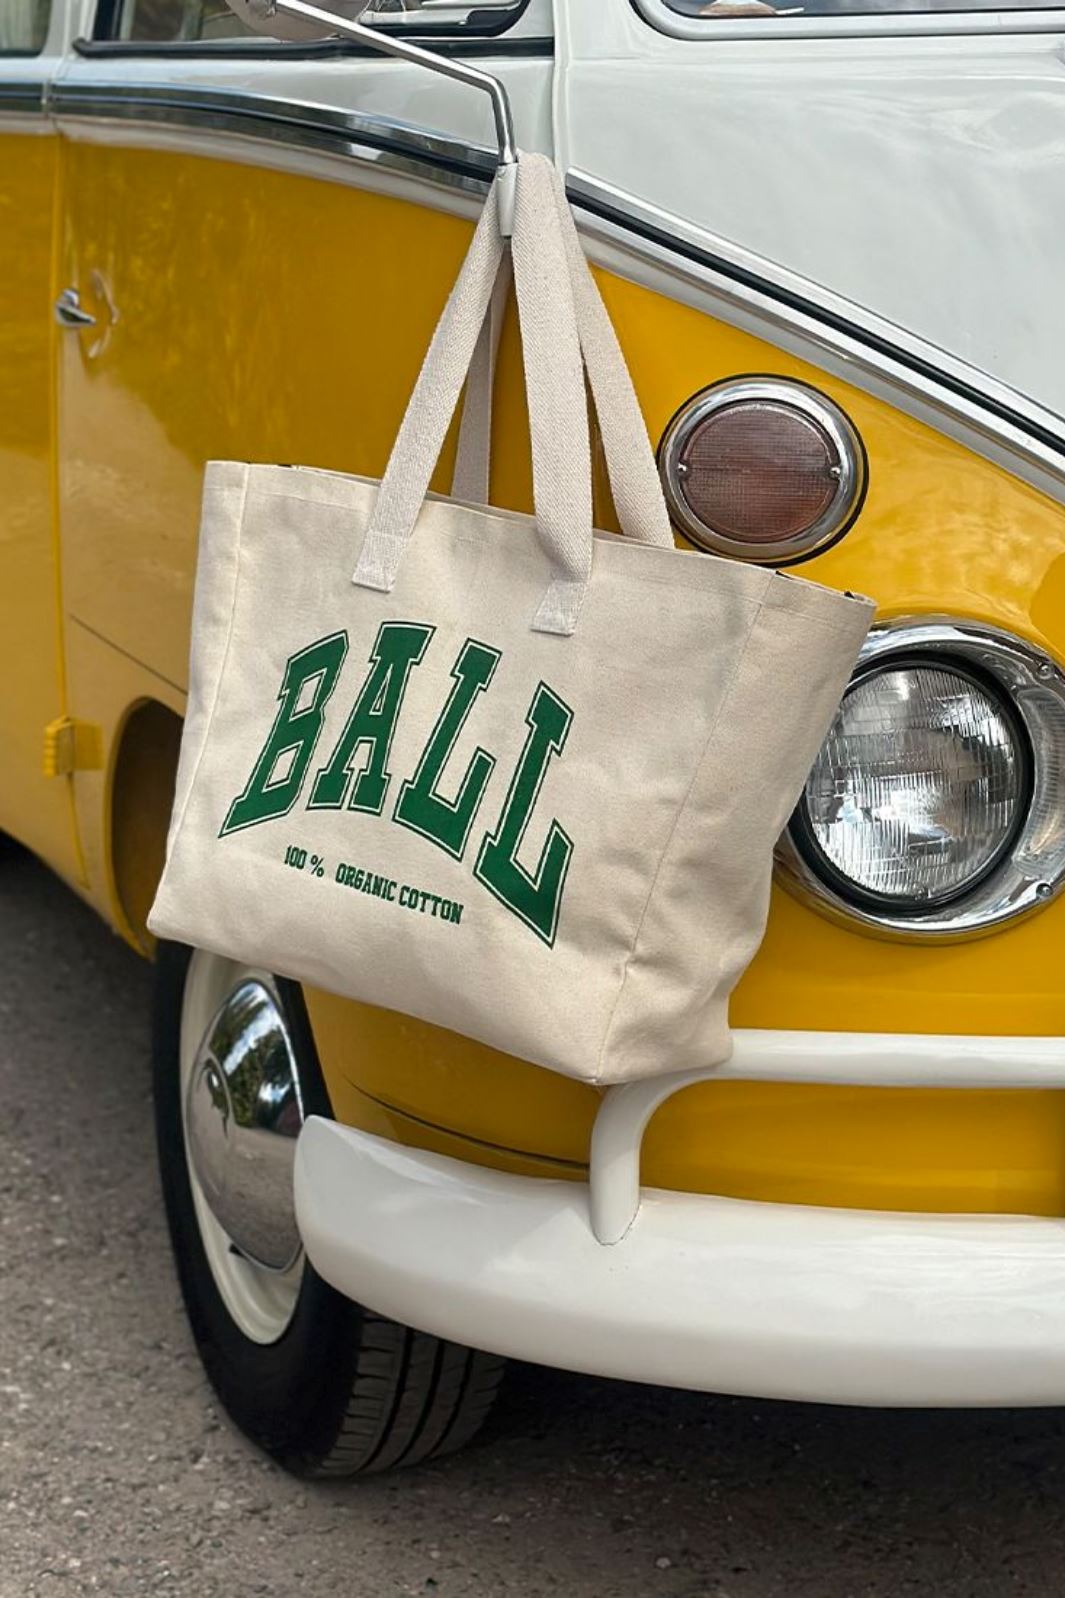 Ball - D. Rolf Bag - Jungle Tasker 